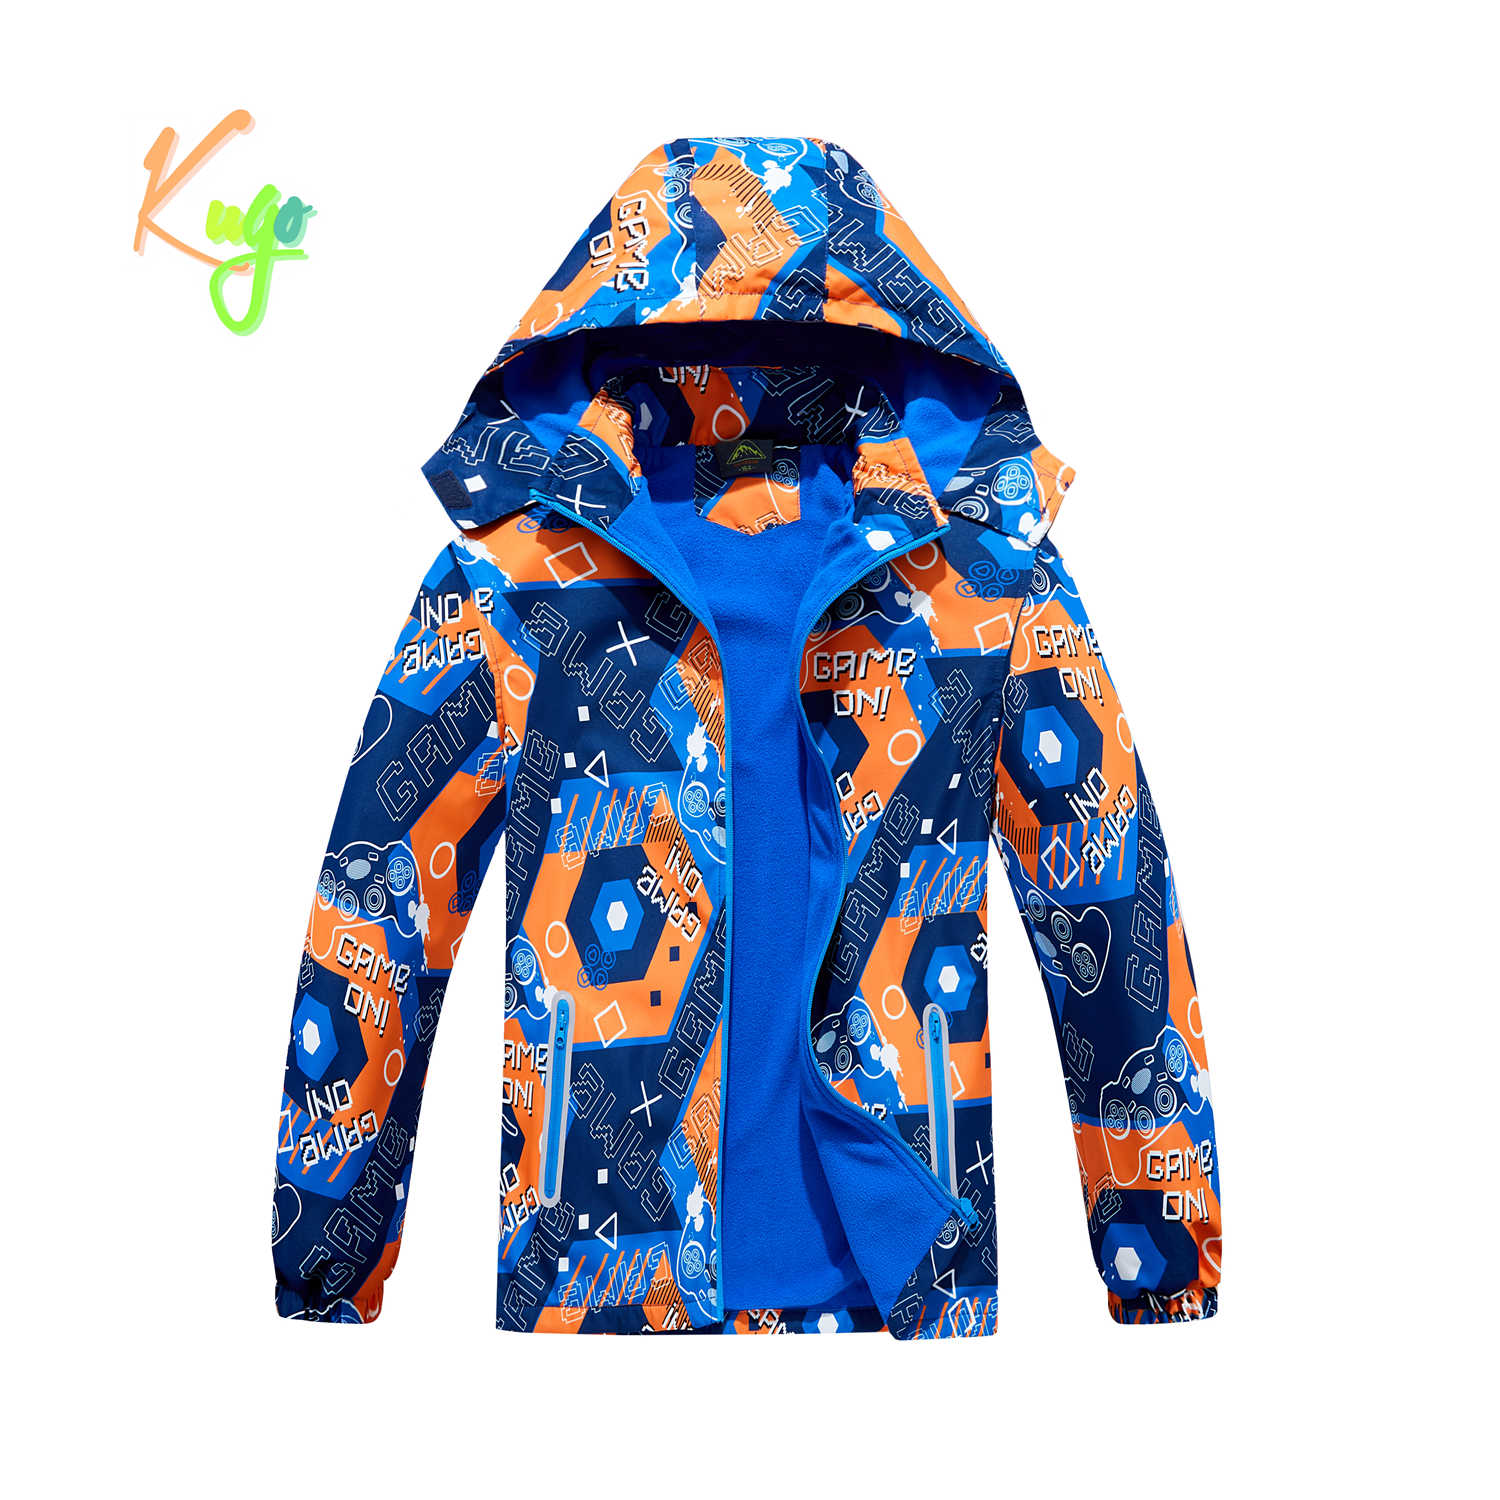 Chlapecká podzimní bunda, zateplená - KUGO B2859, modrá / oranžová Barva: Modrá, Velikost: 140